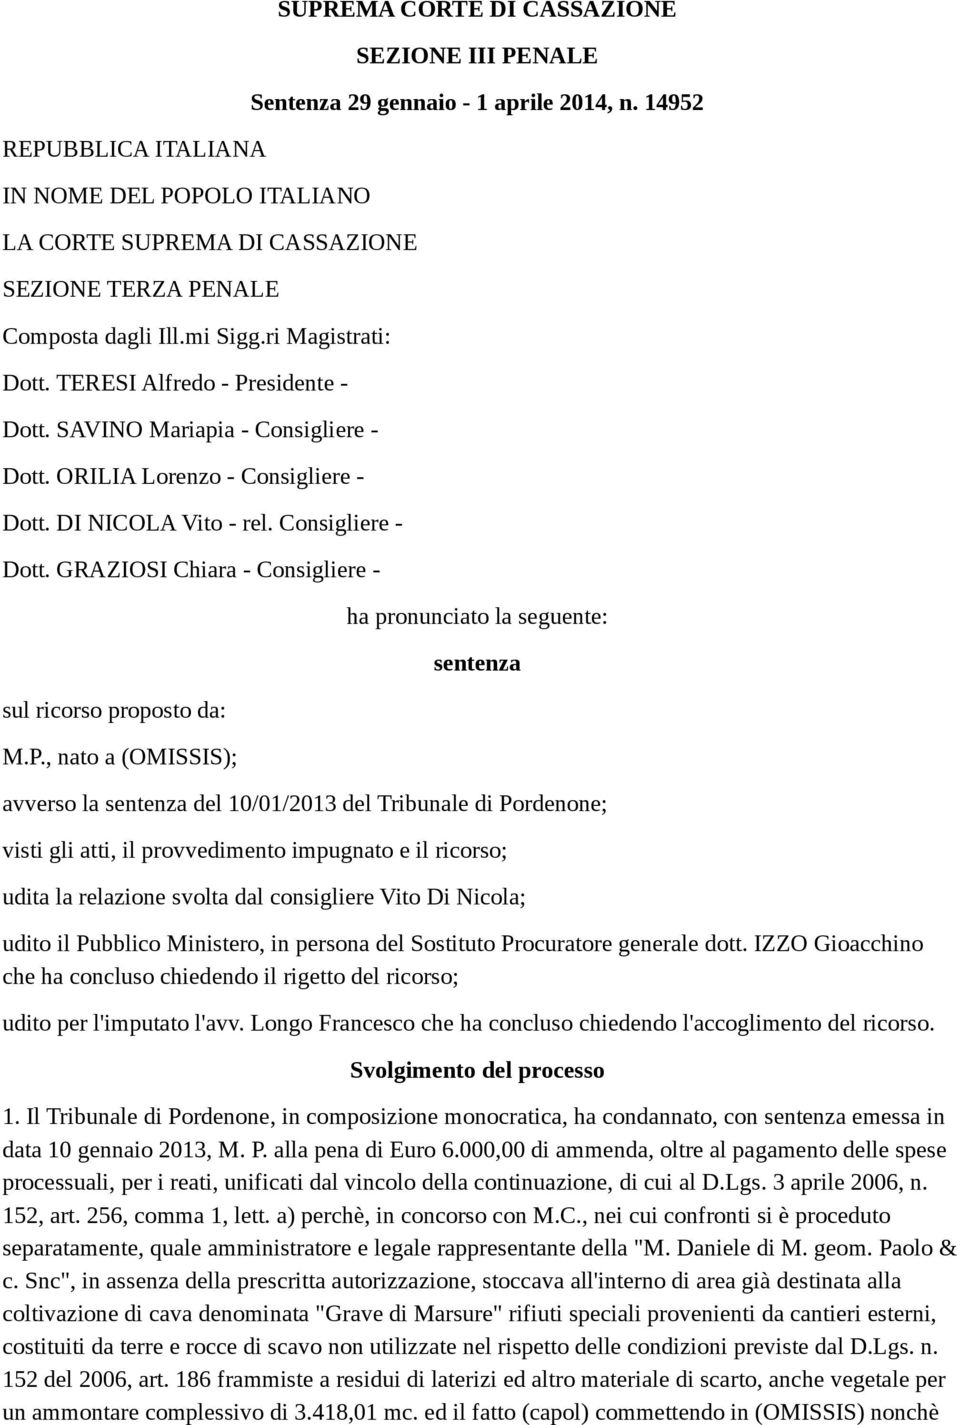 , nato a (OMISSIS); SUPREMA CORTE DI CASSAZIONE SEZIONE III PENALE Sentenza 29 gennaio - 1 aprile 2014, n.